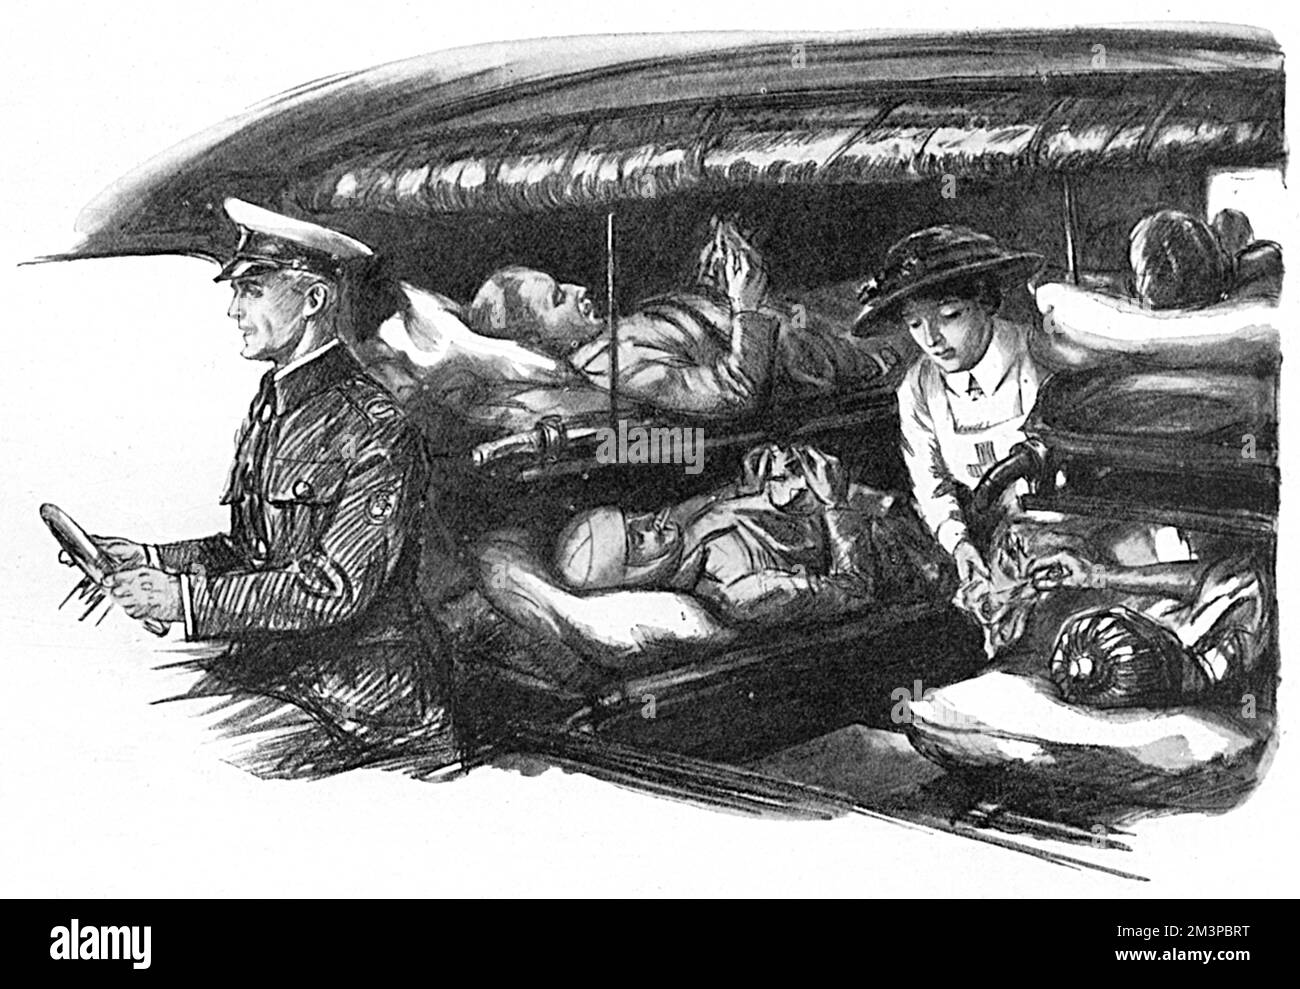 Verwundete Soldaten auf Bahren (Kinderbettchen), die mit einem Krankenhauszug in London angekommen sind, sind in einem Krankenwagen abgebildet, der Bananen und eine Packung Zigaretten von einer behandelnden Krankenschwester angeboten wird. Während des Ersten Weltkriegs kamen täglich Rettungszüge an den termini der Südküsteneisenbahnen an und die Bewohner wurden an die zahlreichen Militärkrankenhäuser in London verteilt. Neben der Begegnung mit Zügen in Charing Cross, Waterloo, Clapham Junction und anderswo, wie erforderlich, führte es Abschiebungsfälle von einem Krankenhaus in ein anderes und in Genesungsheime im Land durch. Datum: 1916 Stockfoto